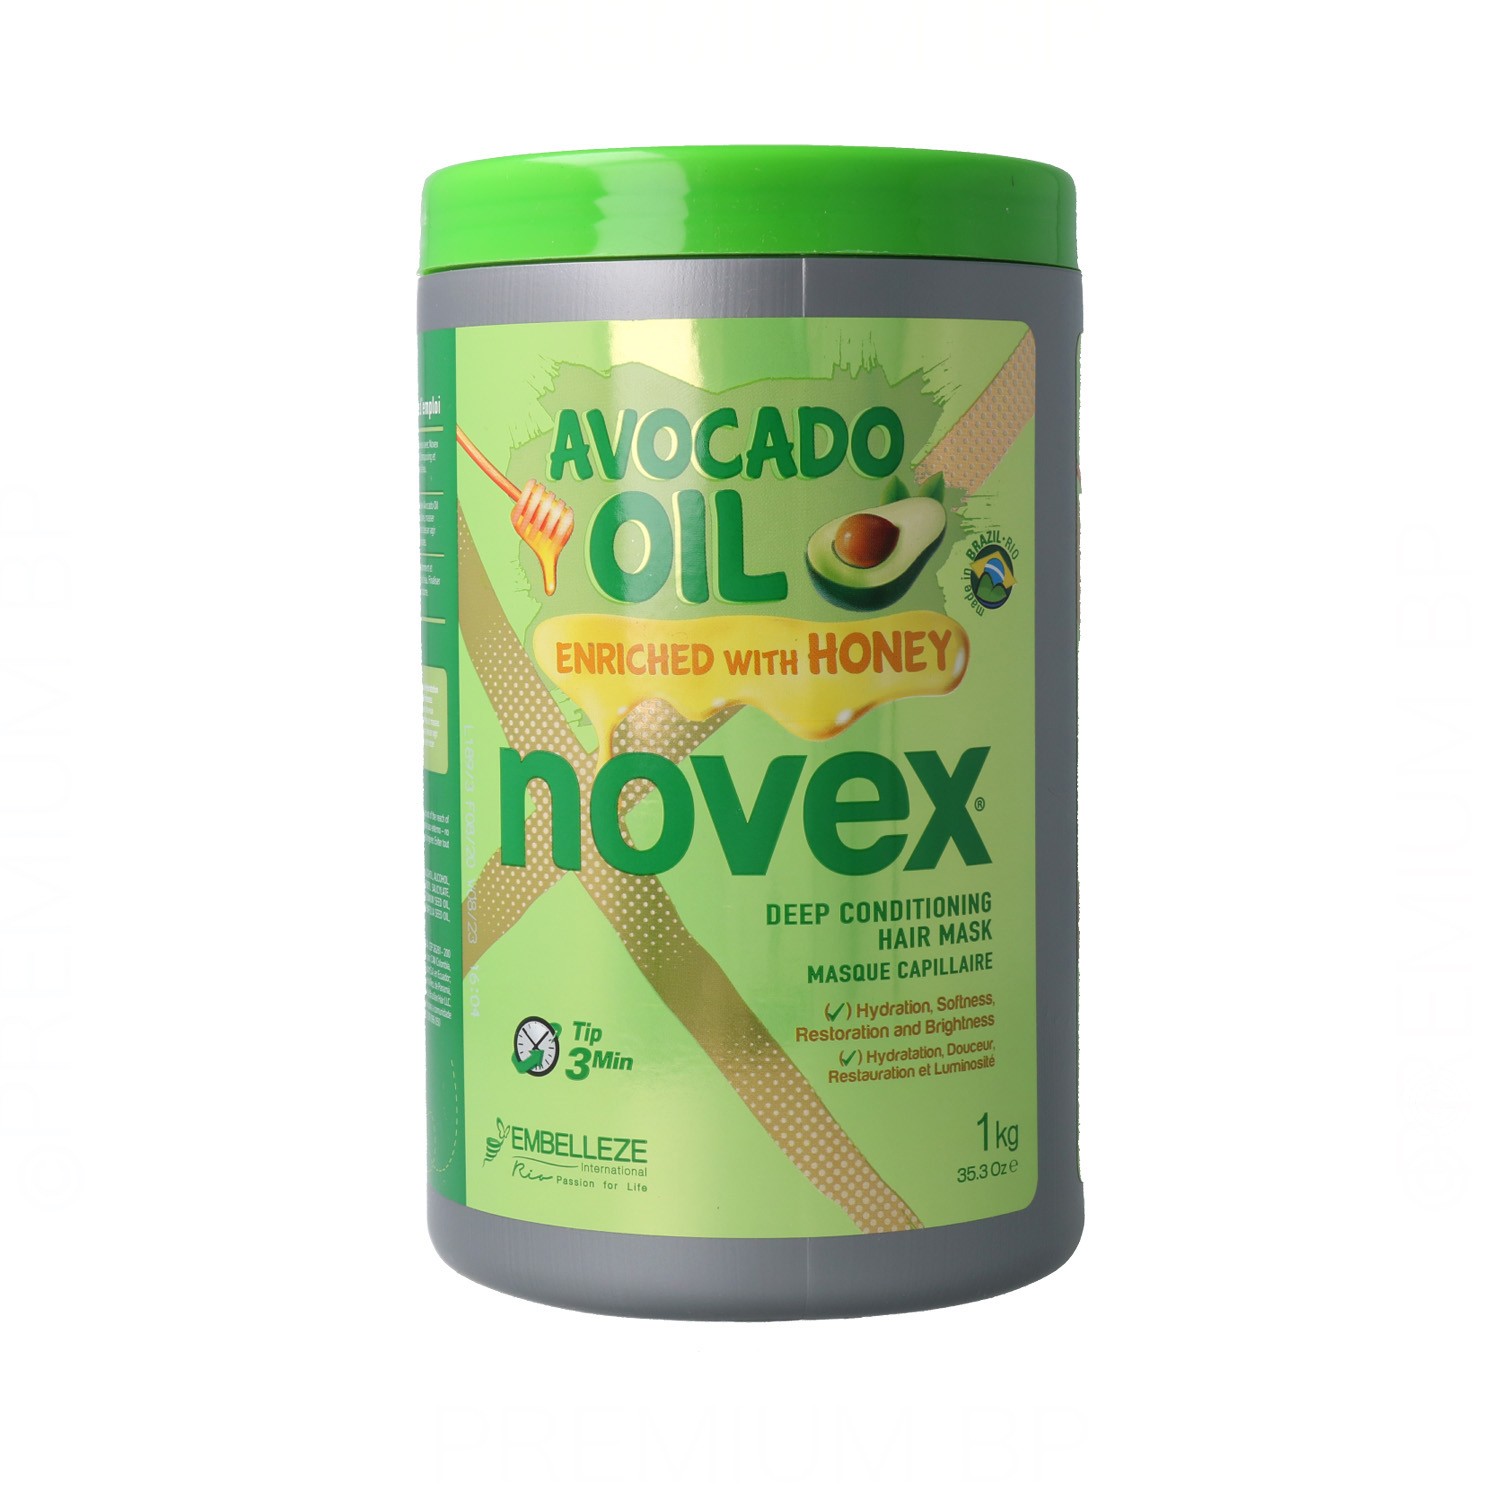 Novex Avocado Oil Masque Capillaire 1000 ml